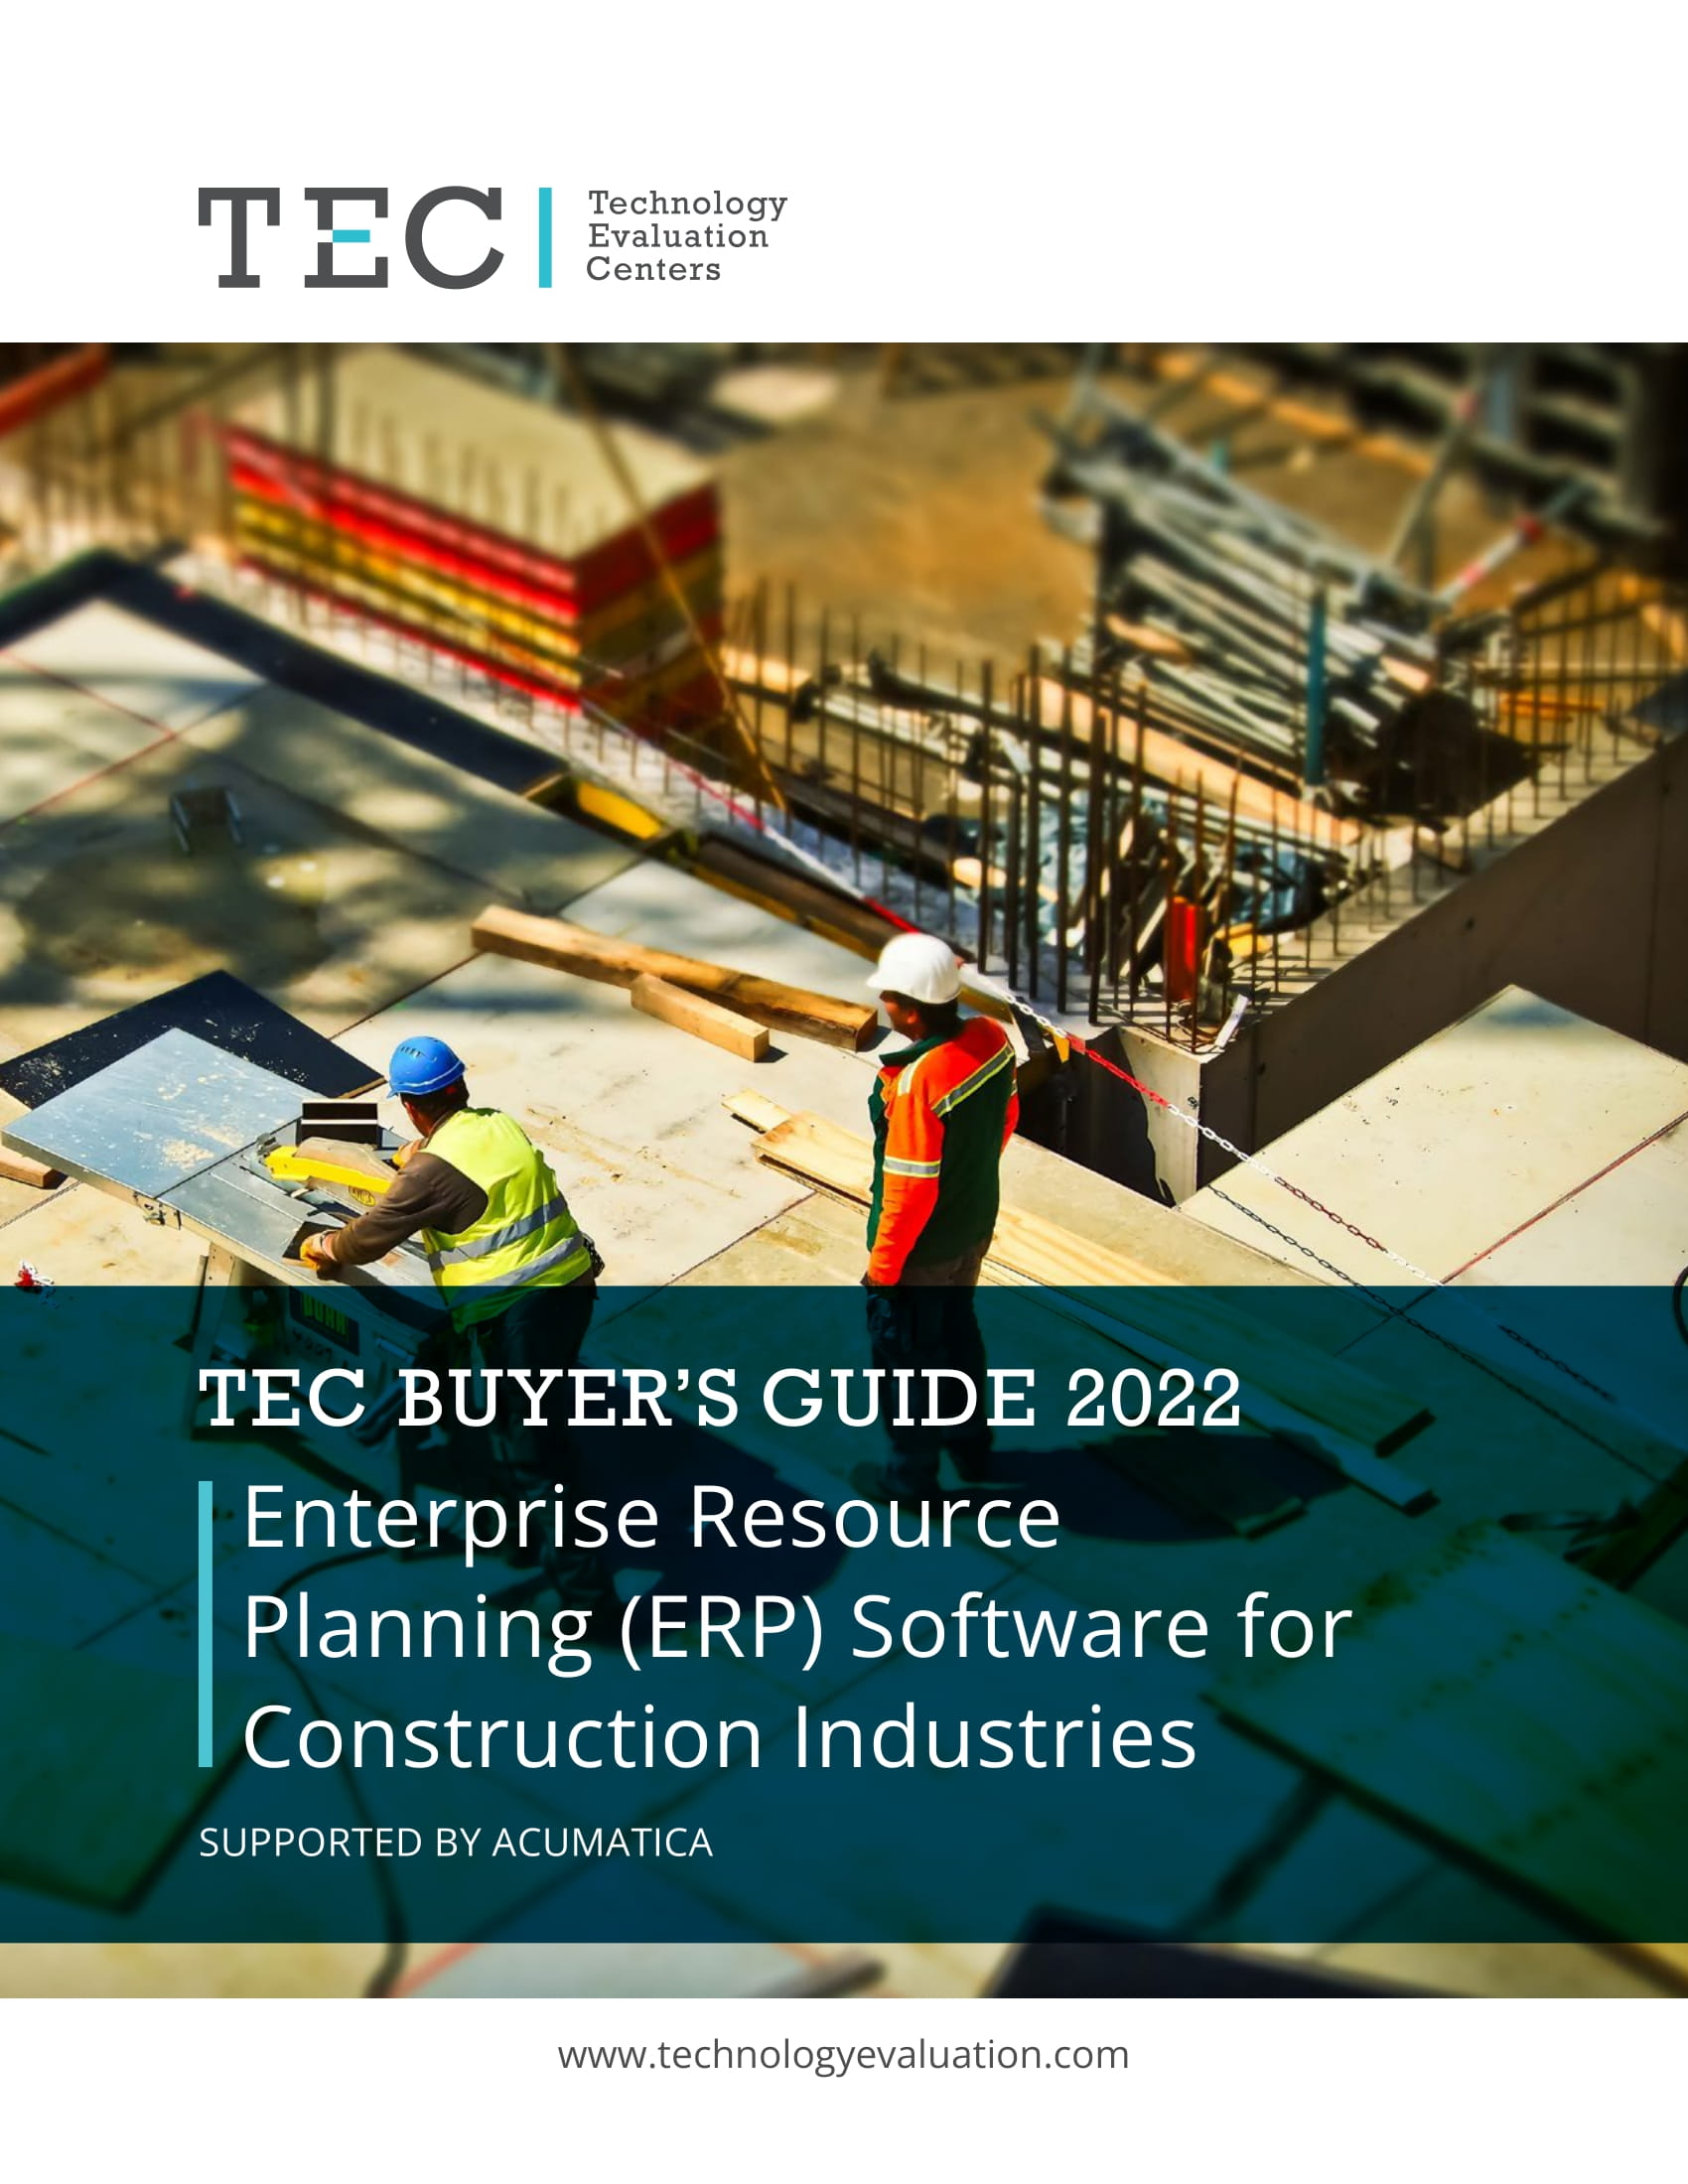 Le guide de l'acheteur de logiciels ERP pour les industries de la construction, réalisé par Technology Evaluation Centers (TEC), présente Acumatica.